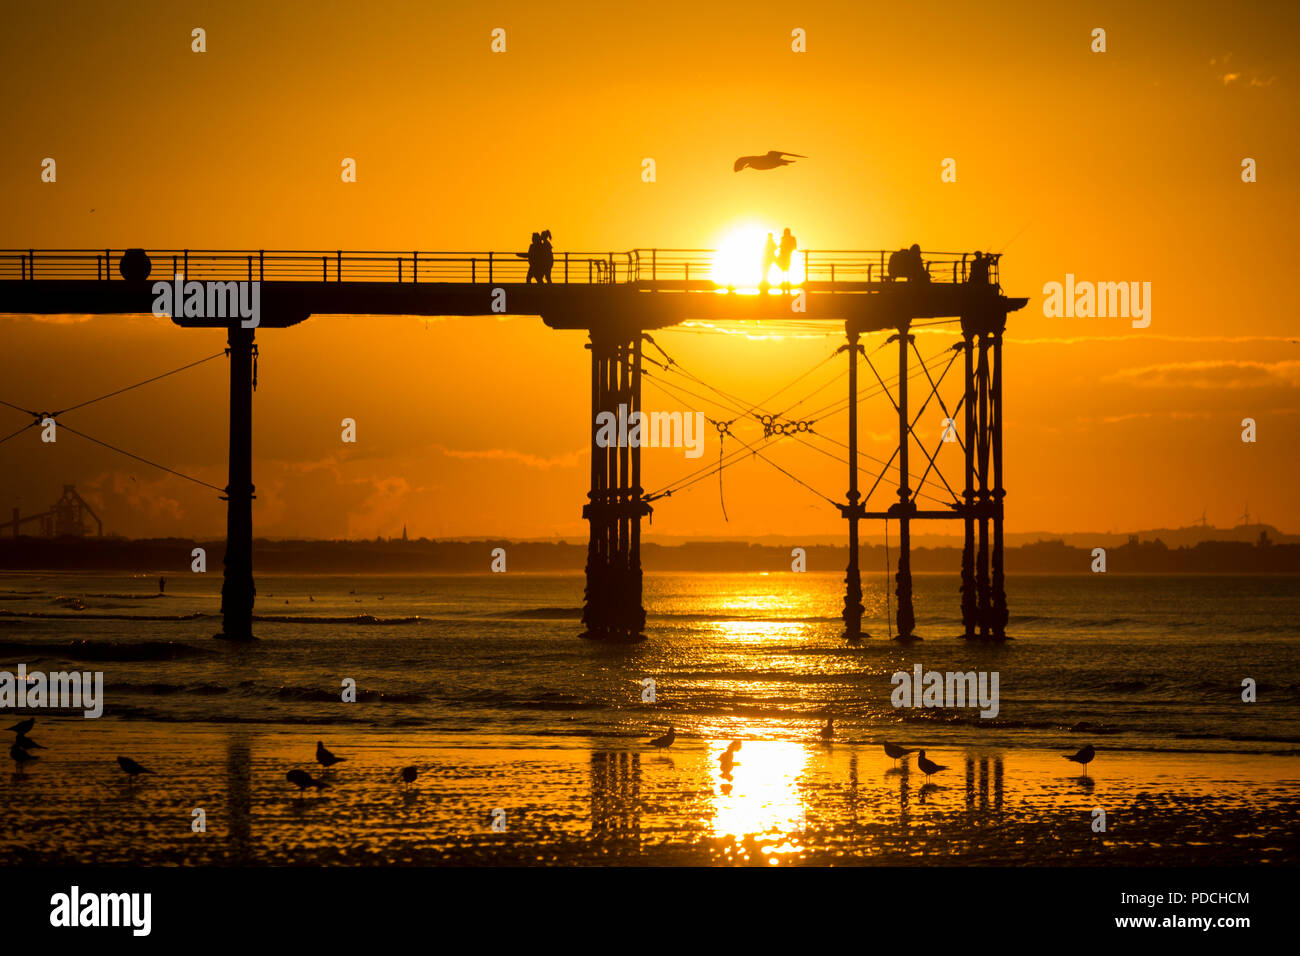 Menschen beobachten Sonnenuntergang von Salburn Victirian's Pier. Saltburn am Meer, North Yorkshire, England. Vereinigtes Königreich. August 2018. Stockfoto